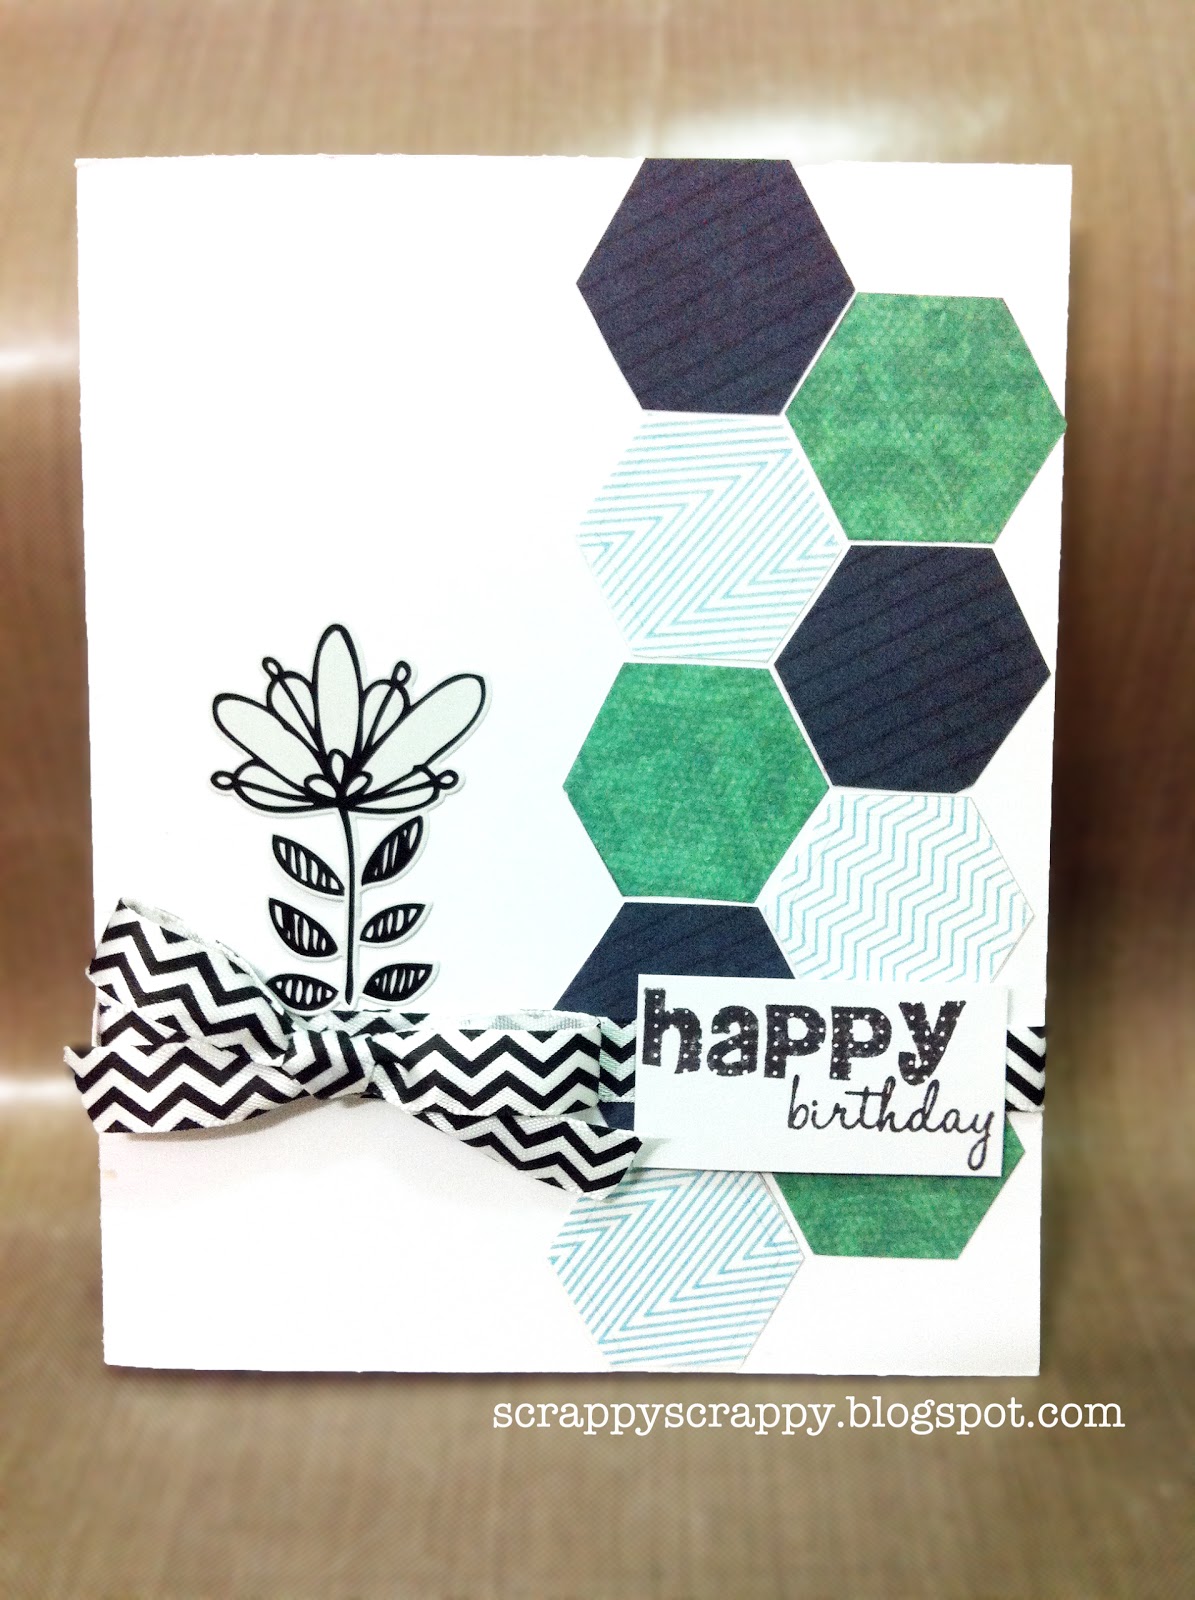 Hexagon Birthday Card - Scrappy Scrappy